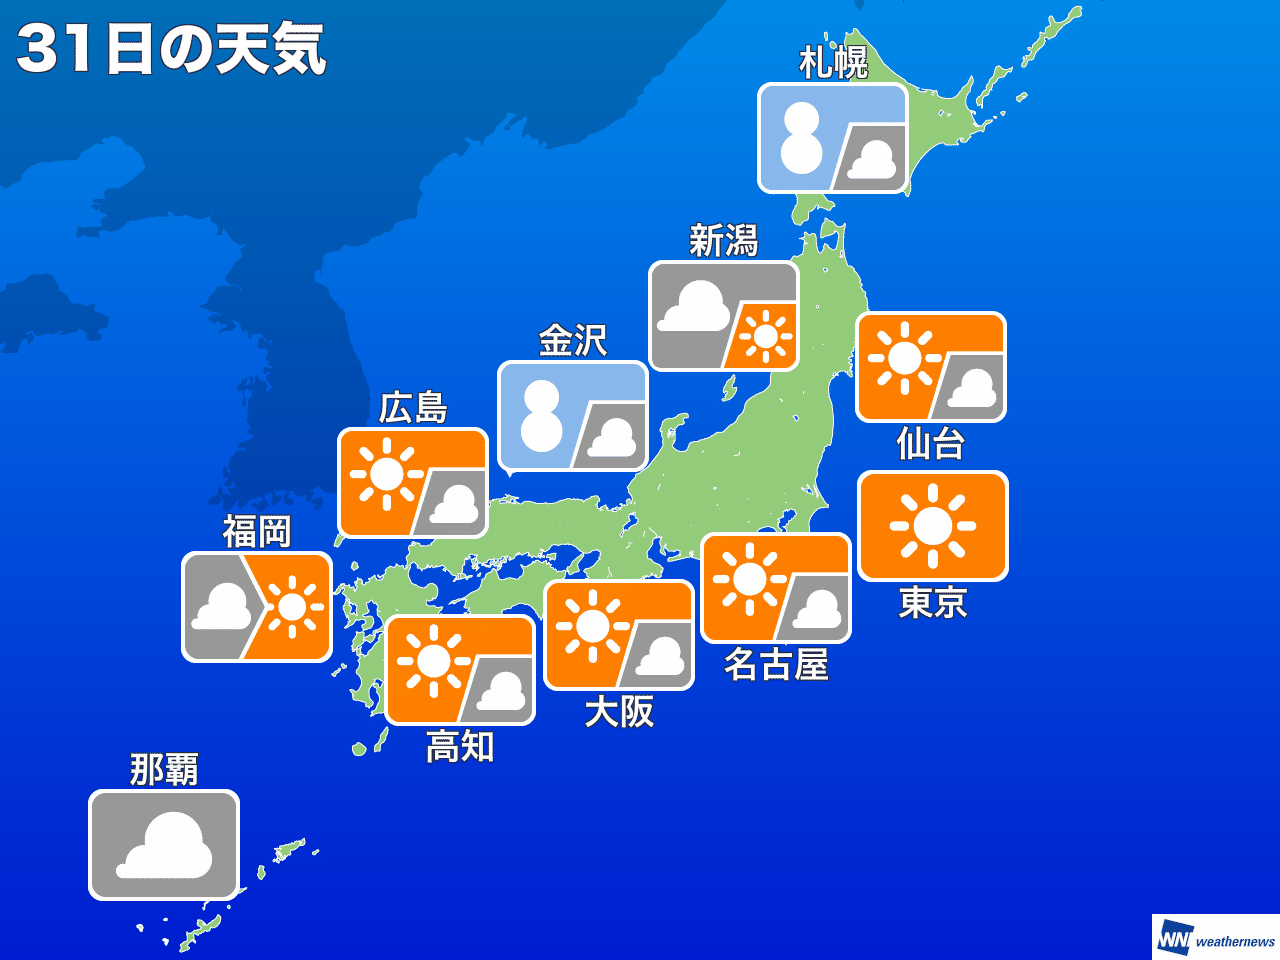 
大晦日の天気　太平洋側は冬晴れ継続　日本海側は大雪のピーク越える
        